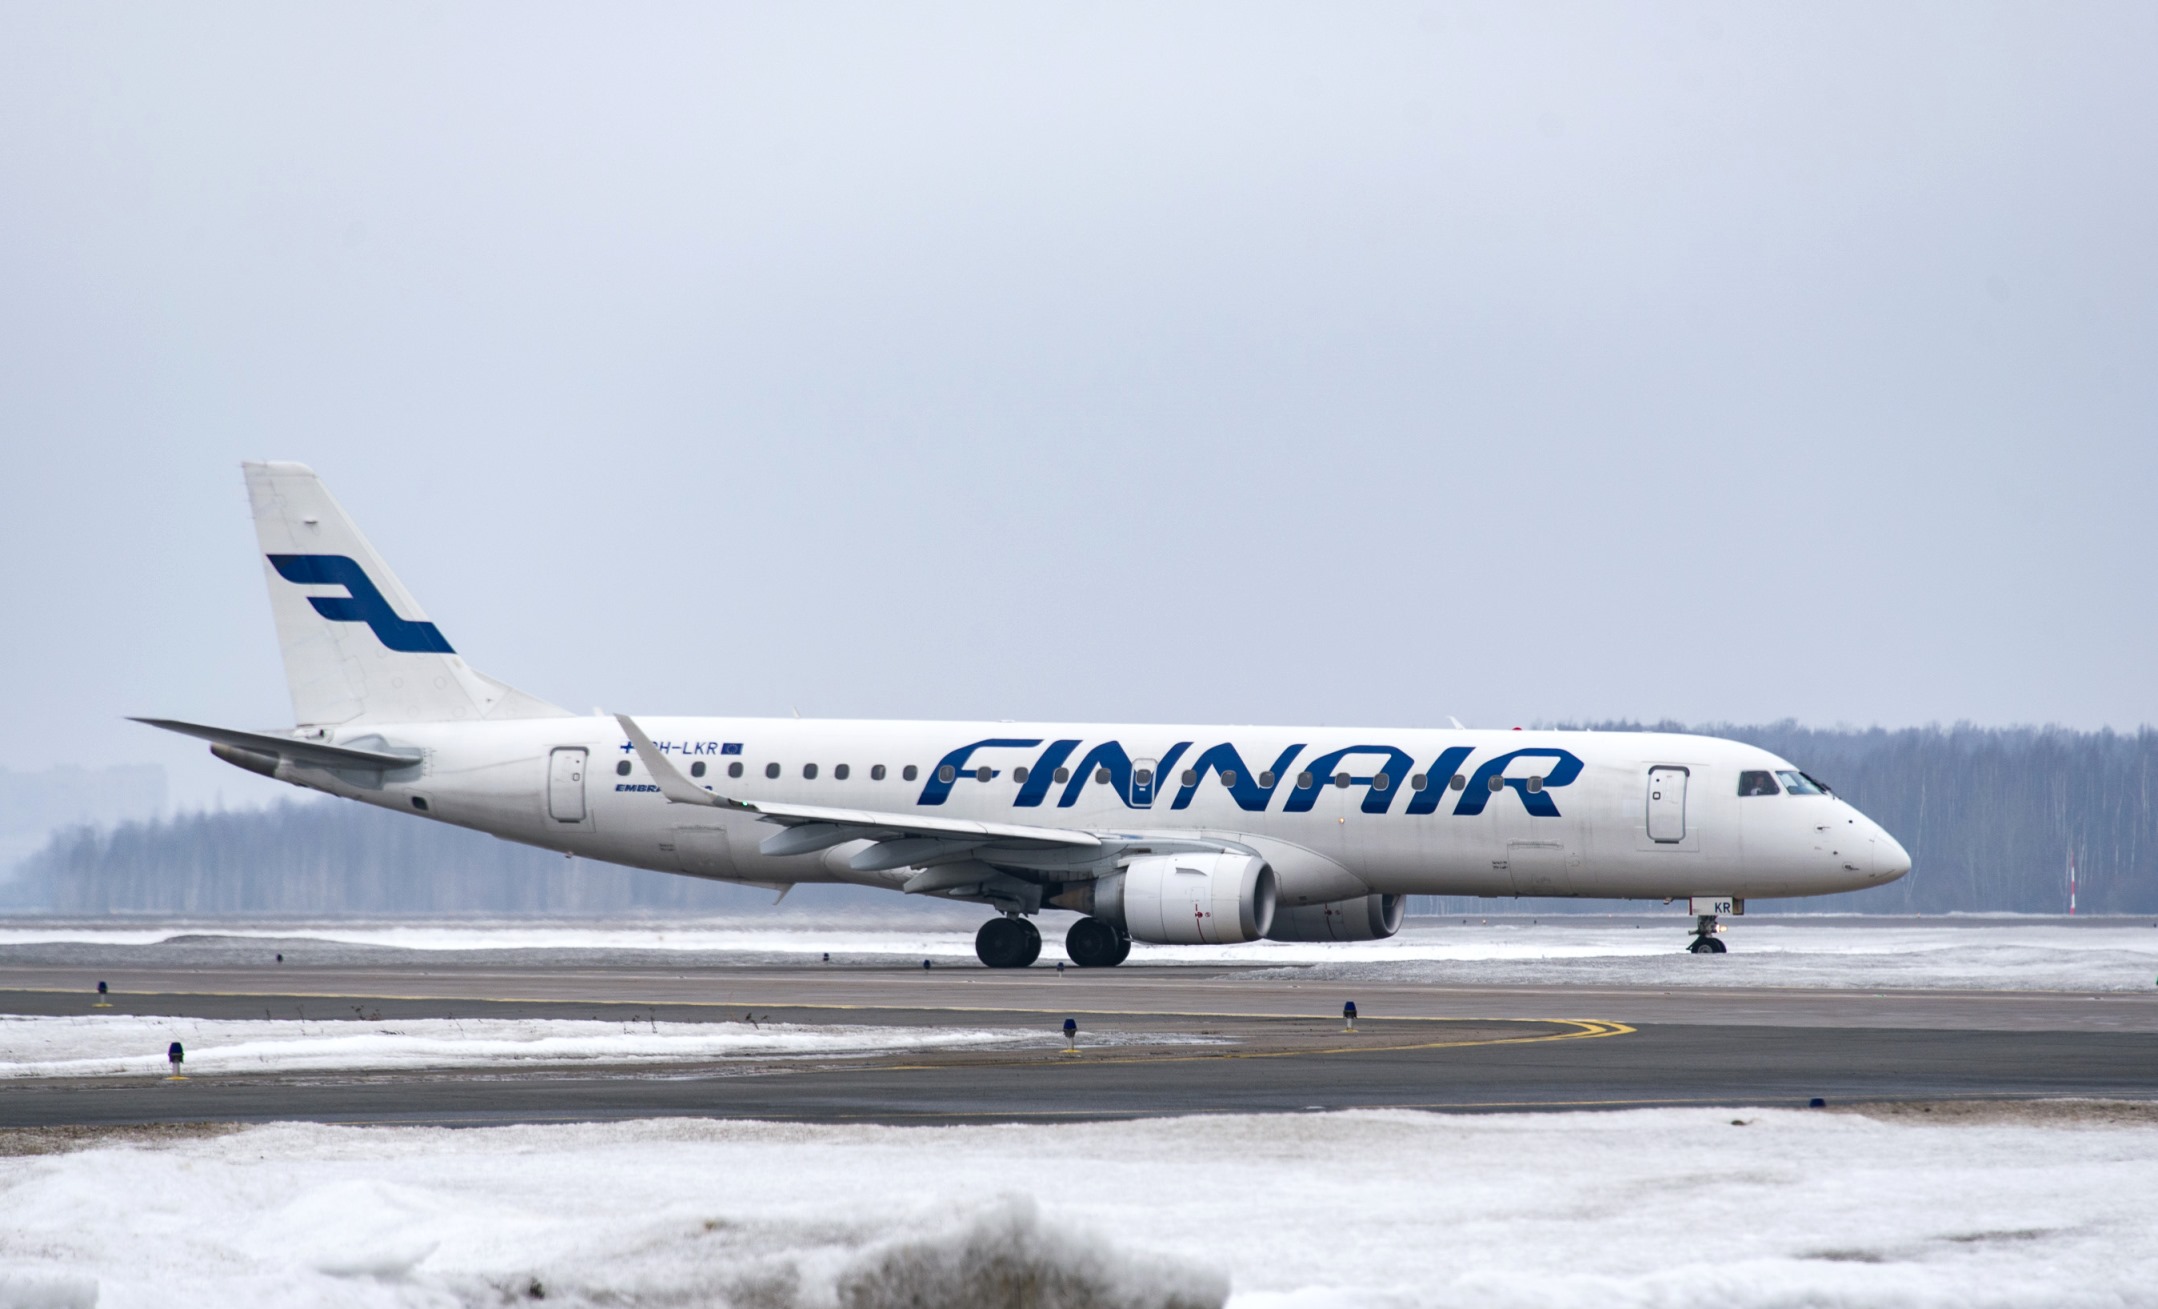 пассажирский самолёт, авиалайнер, авиакомпания Finnair, аэропорт Пулково